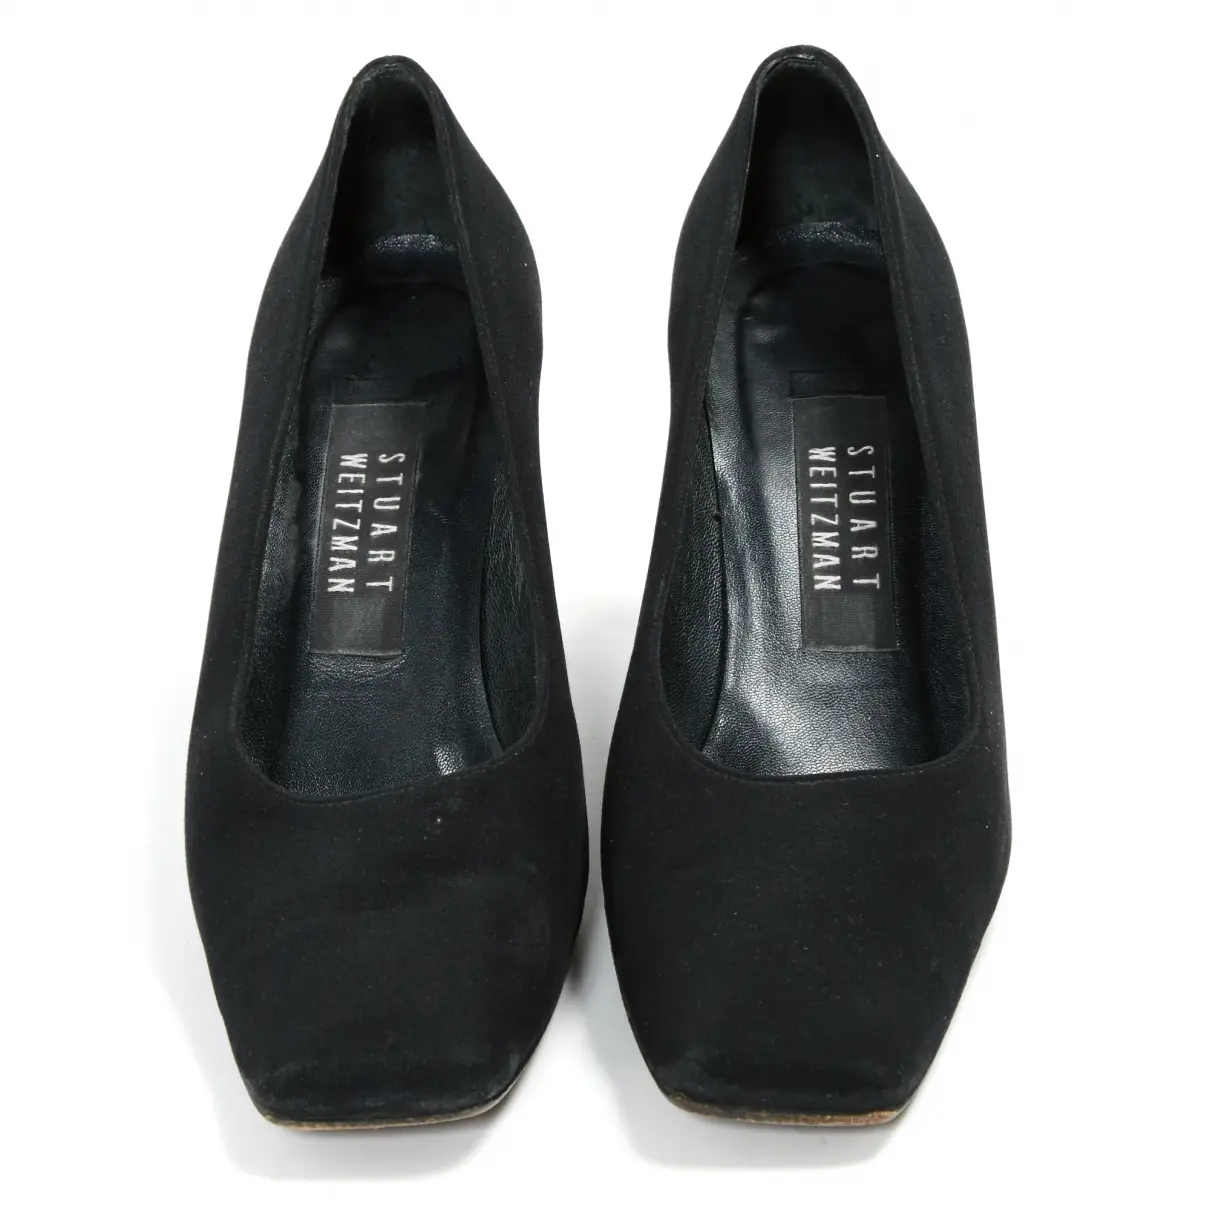 Buy Stuart Weitzman Cloth heels online